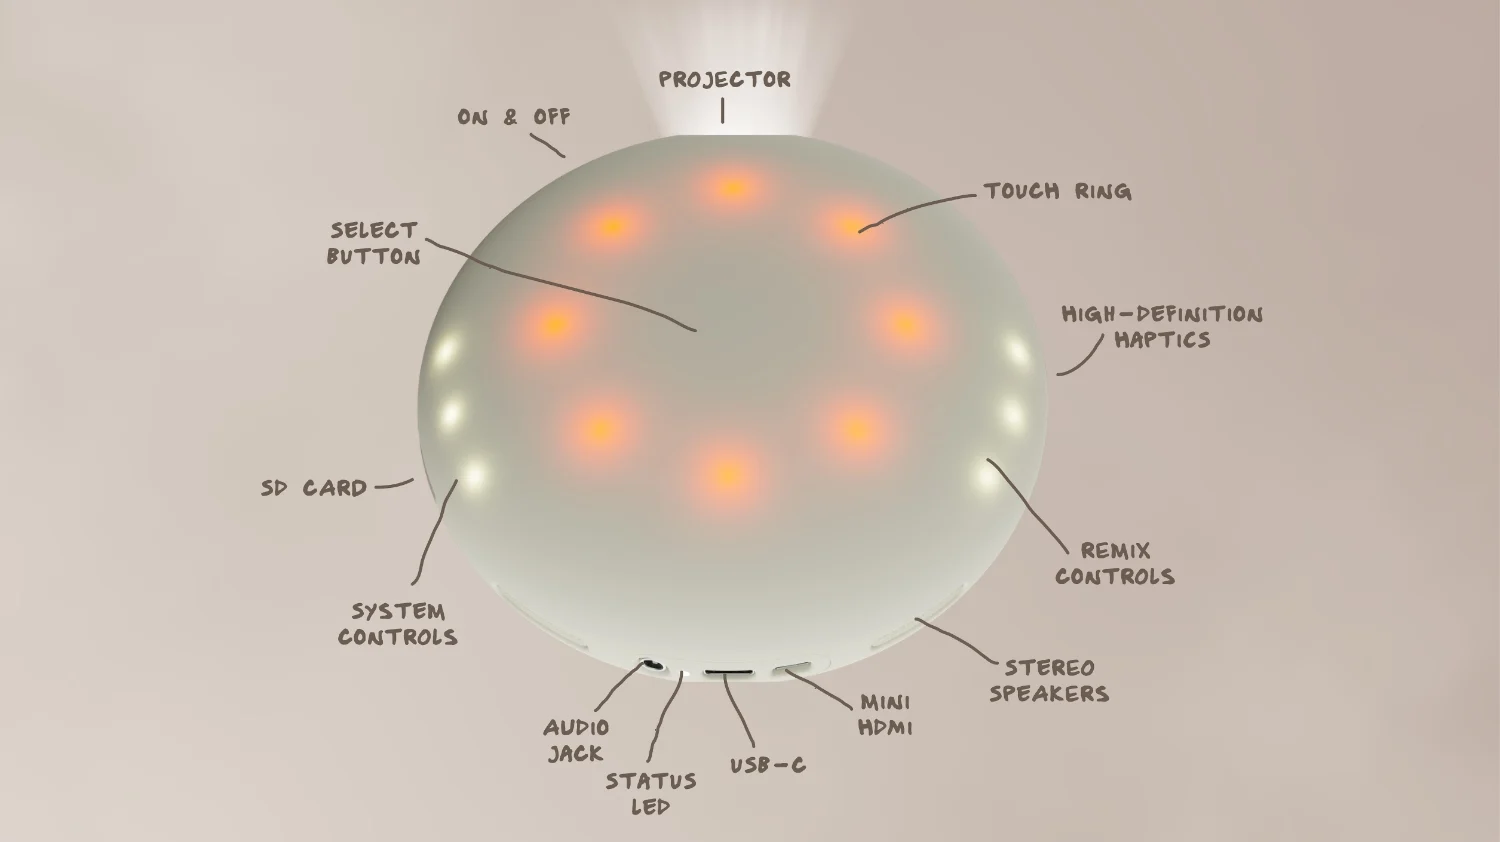 Diagrama de los botones y controles del Stem Projector, incluidas las etiquetas de las distintas partes del dispositivo